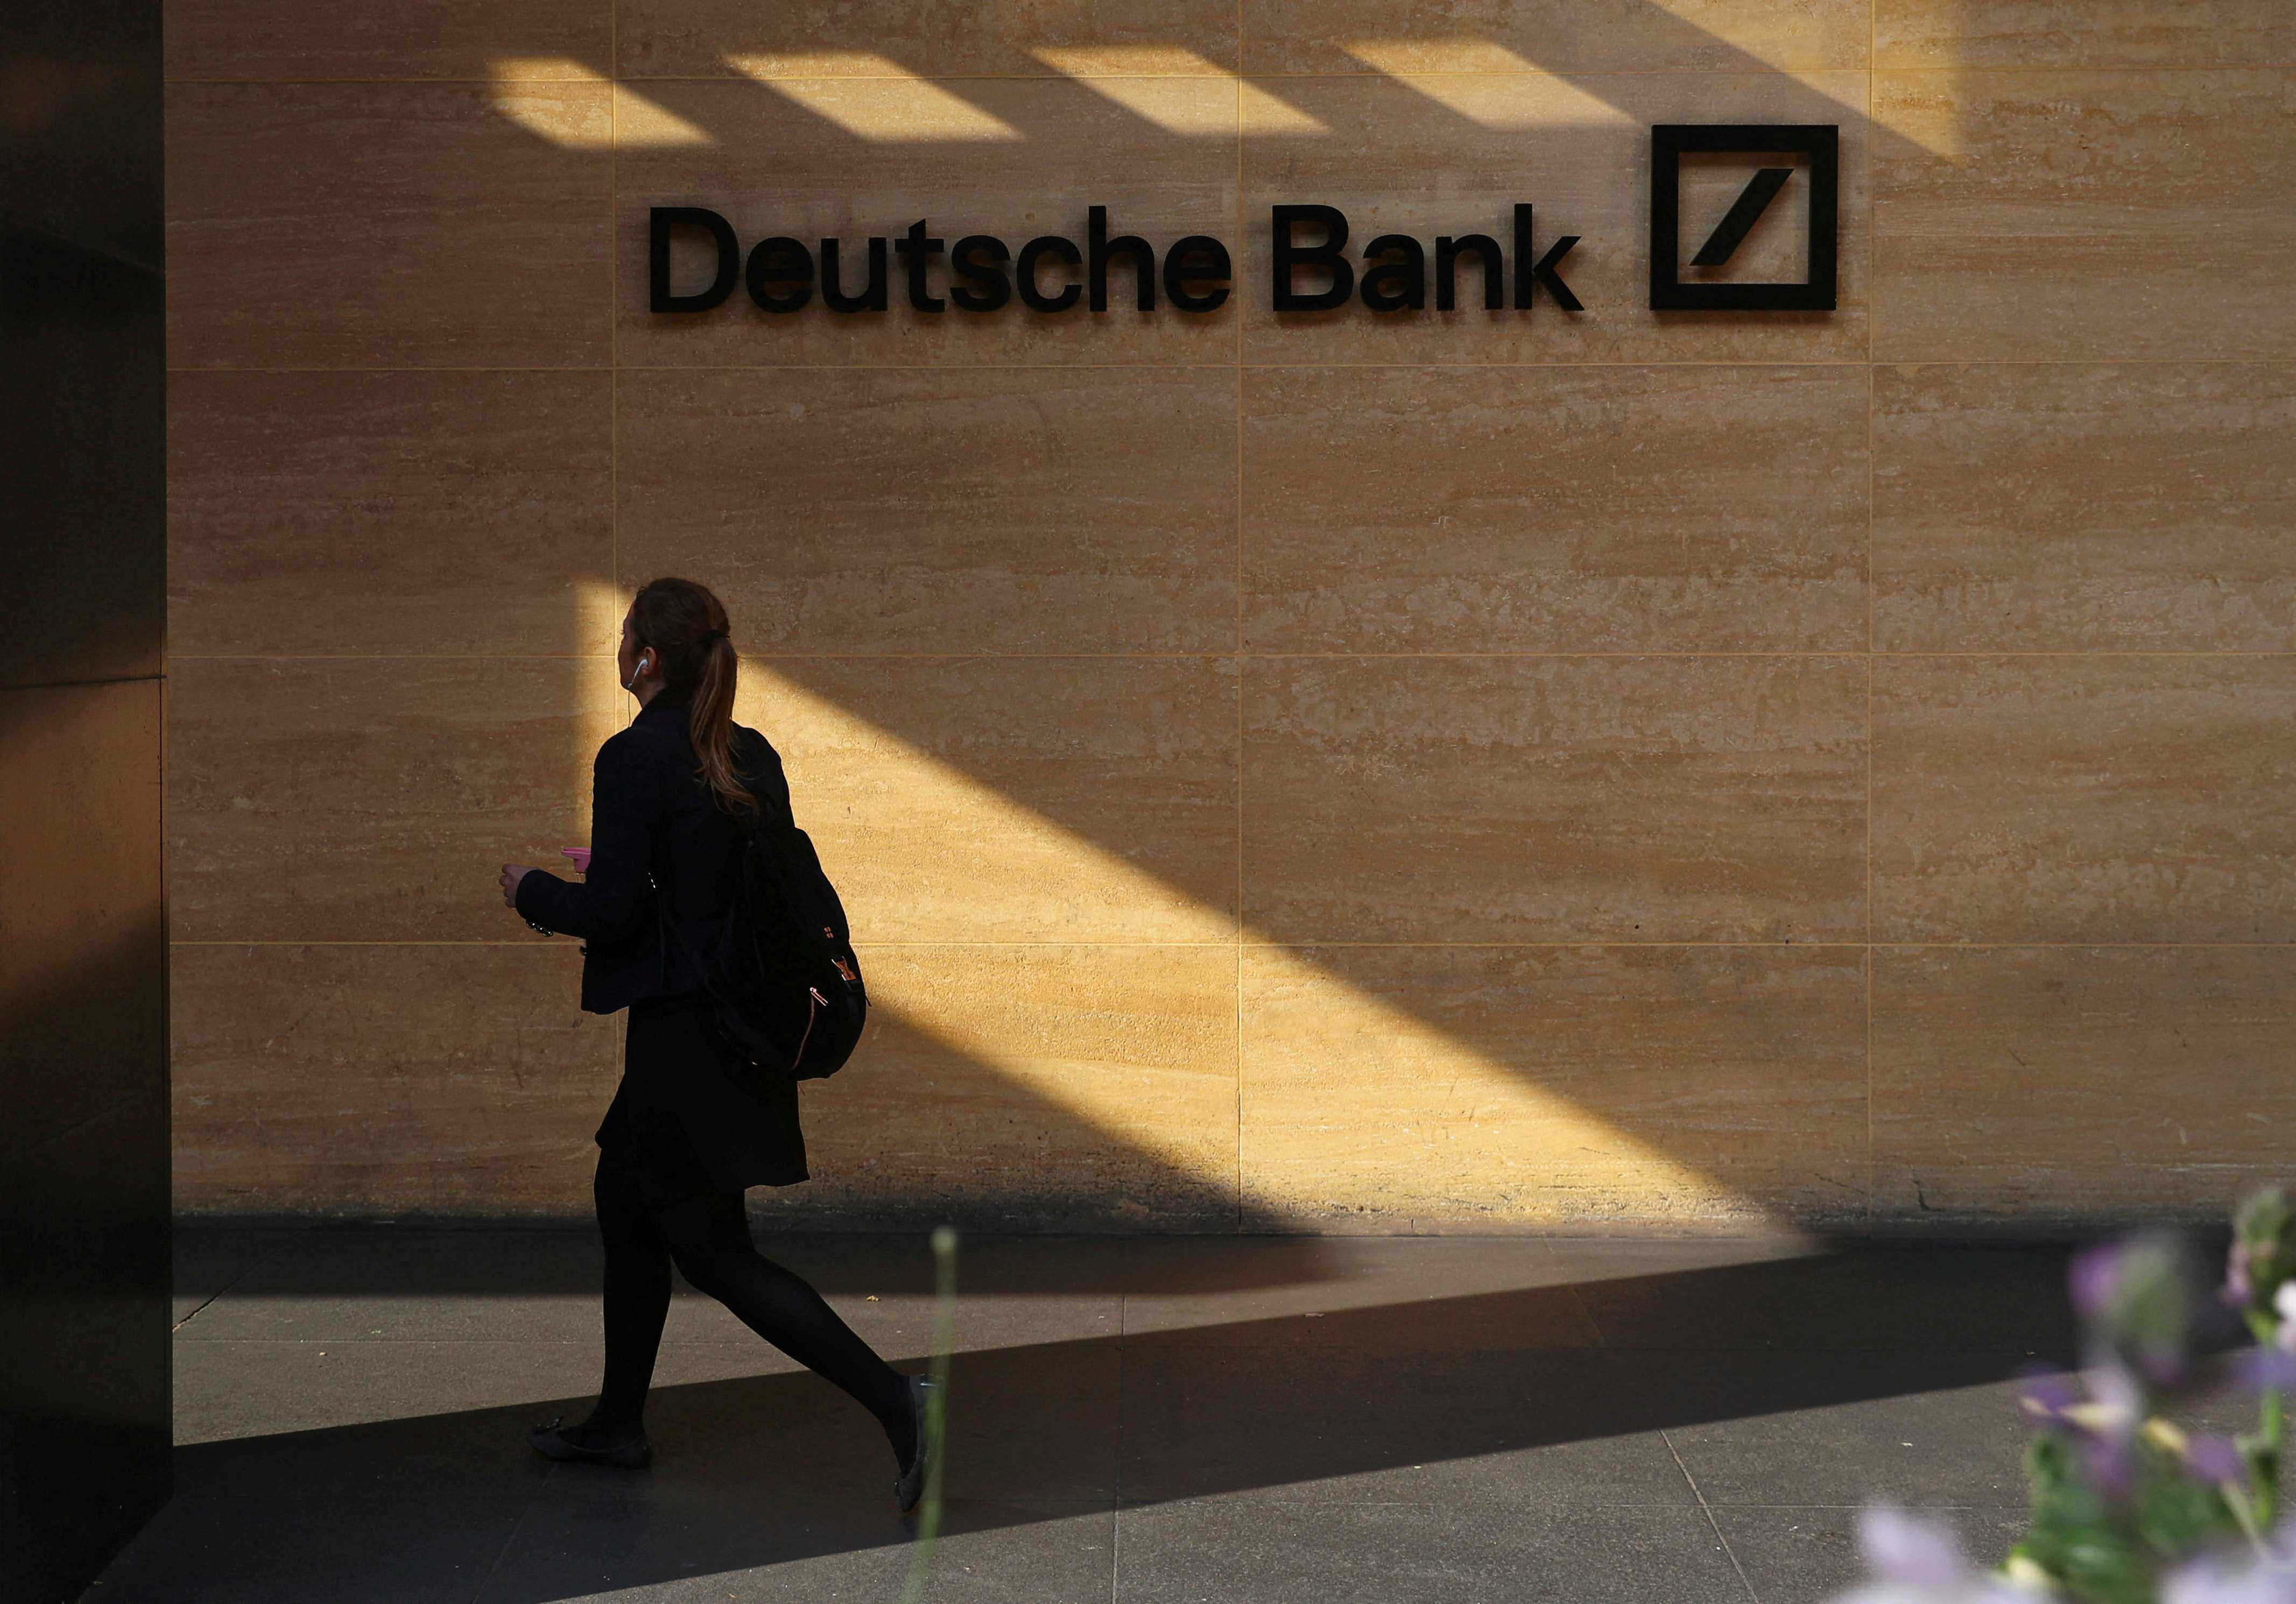 
Deutsche Bank bans Mondays, Fridays